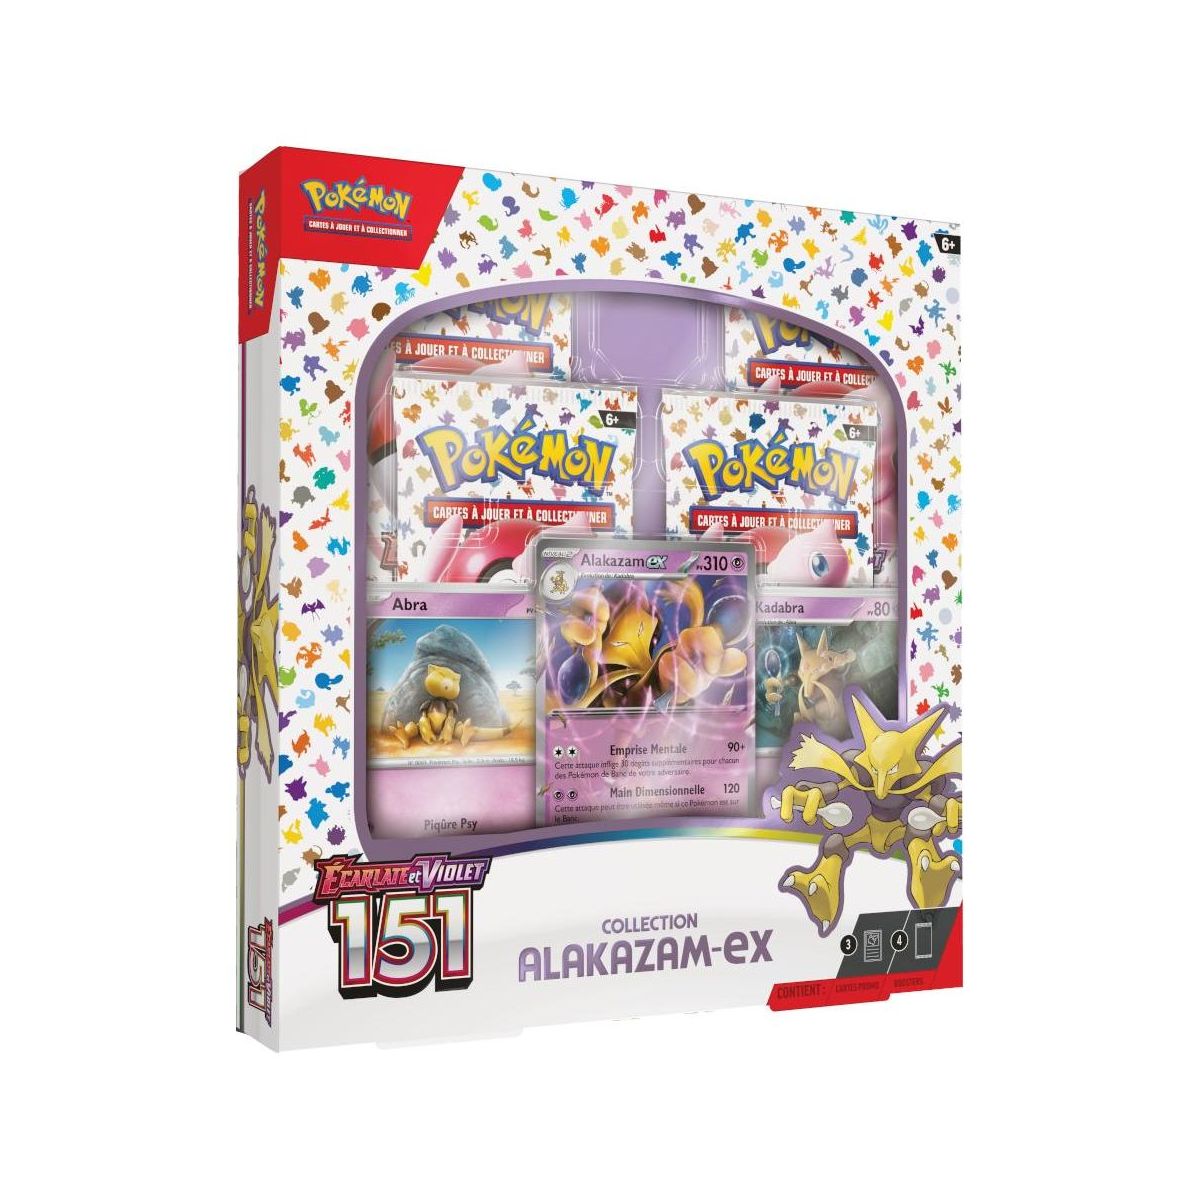 Item Pokémon - Alakazam EX Collection Box - Scarlet and Purple - 151 -[SV03.5 - EV03.5] - FR